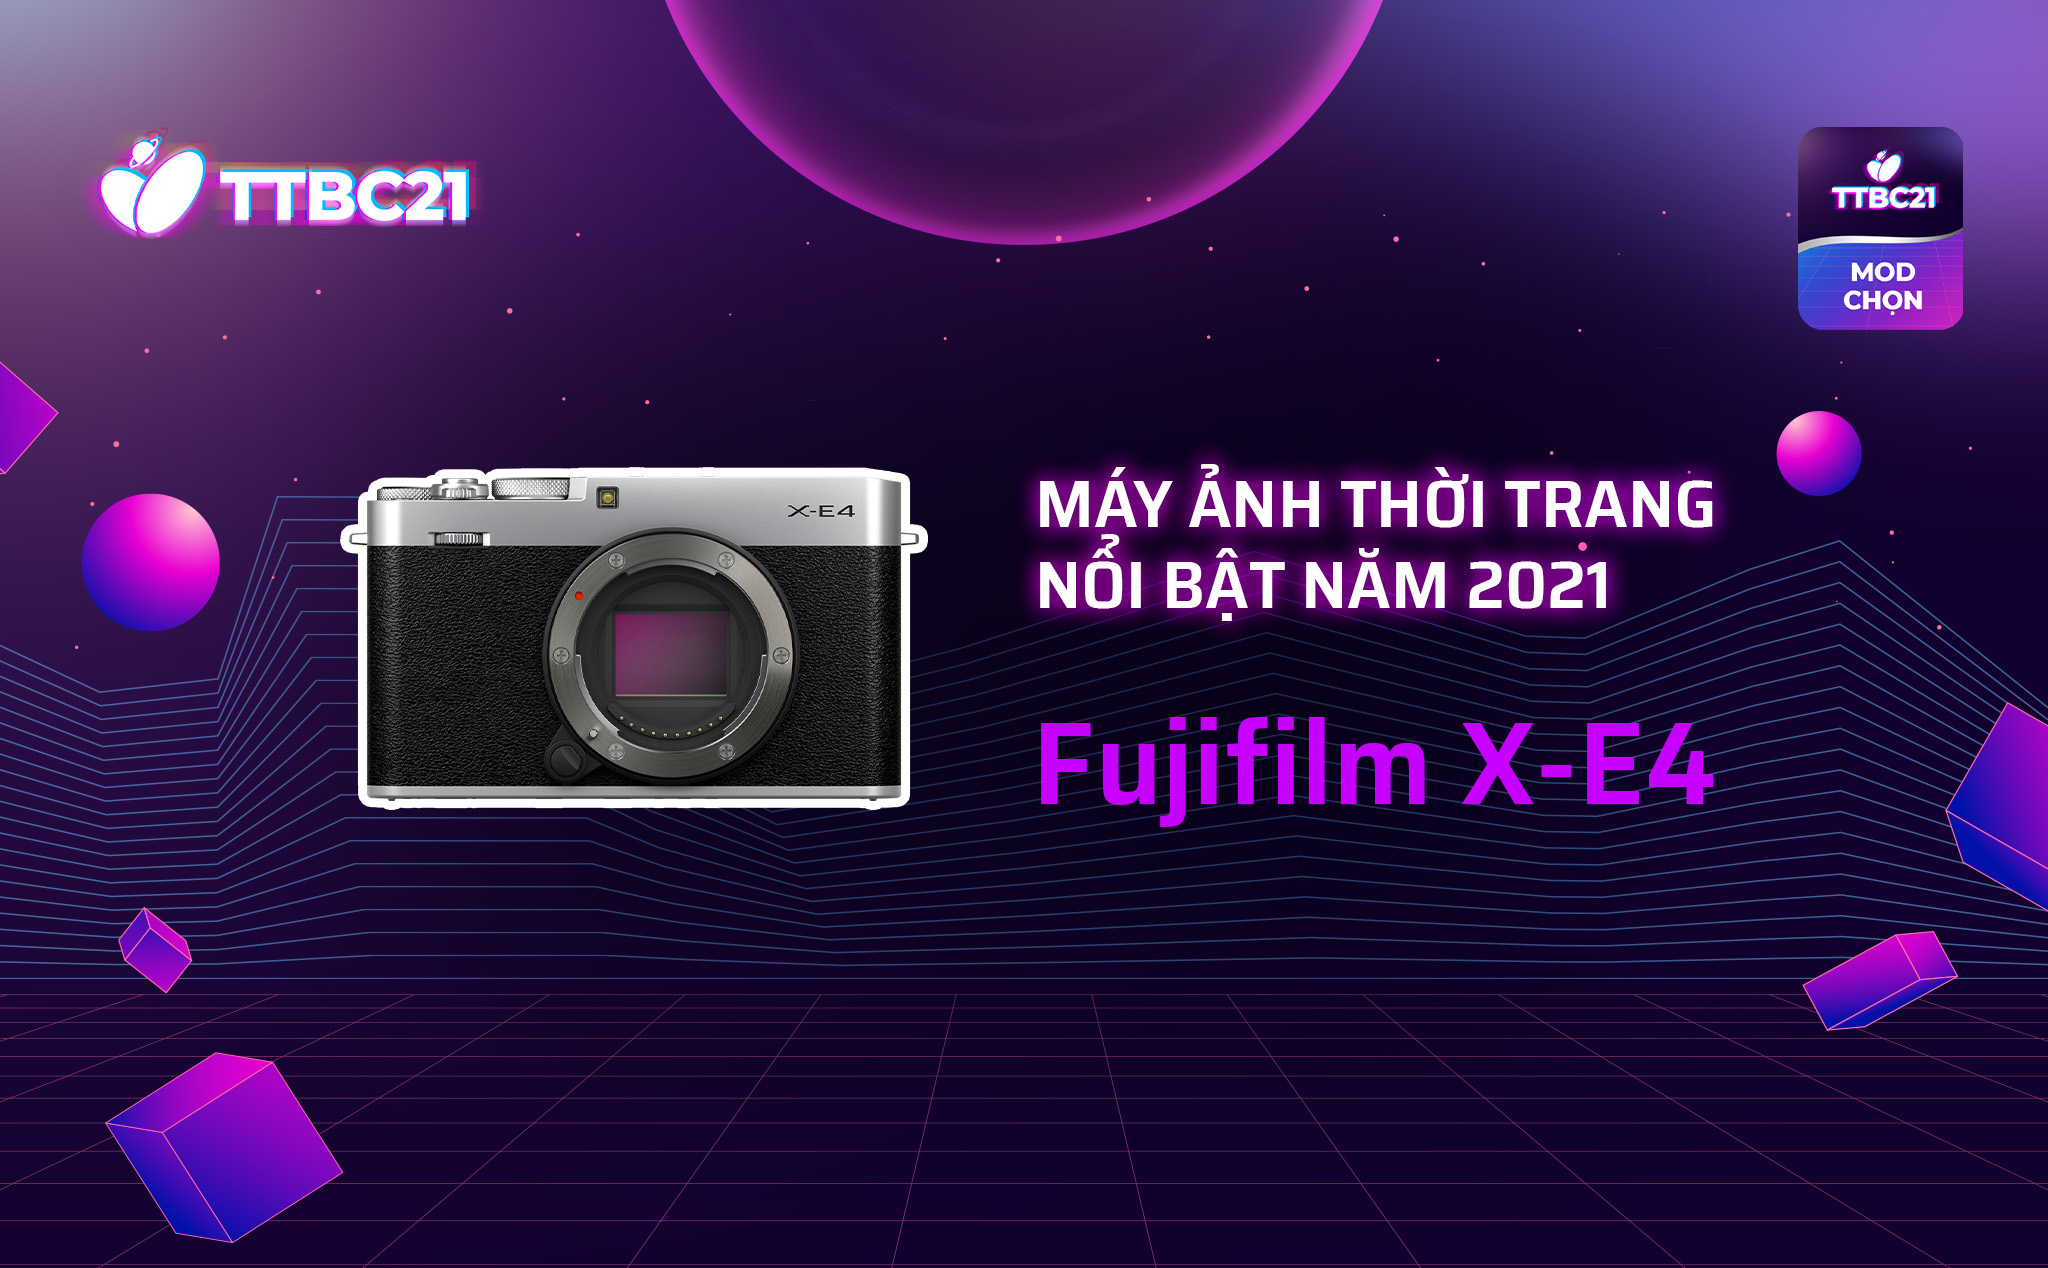 TTBC21 - Mod's Choice: Máy ảnh thời trang nổi bật năm 2021 - Fujifilm X-E4